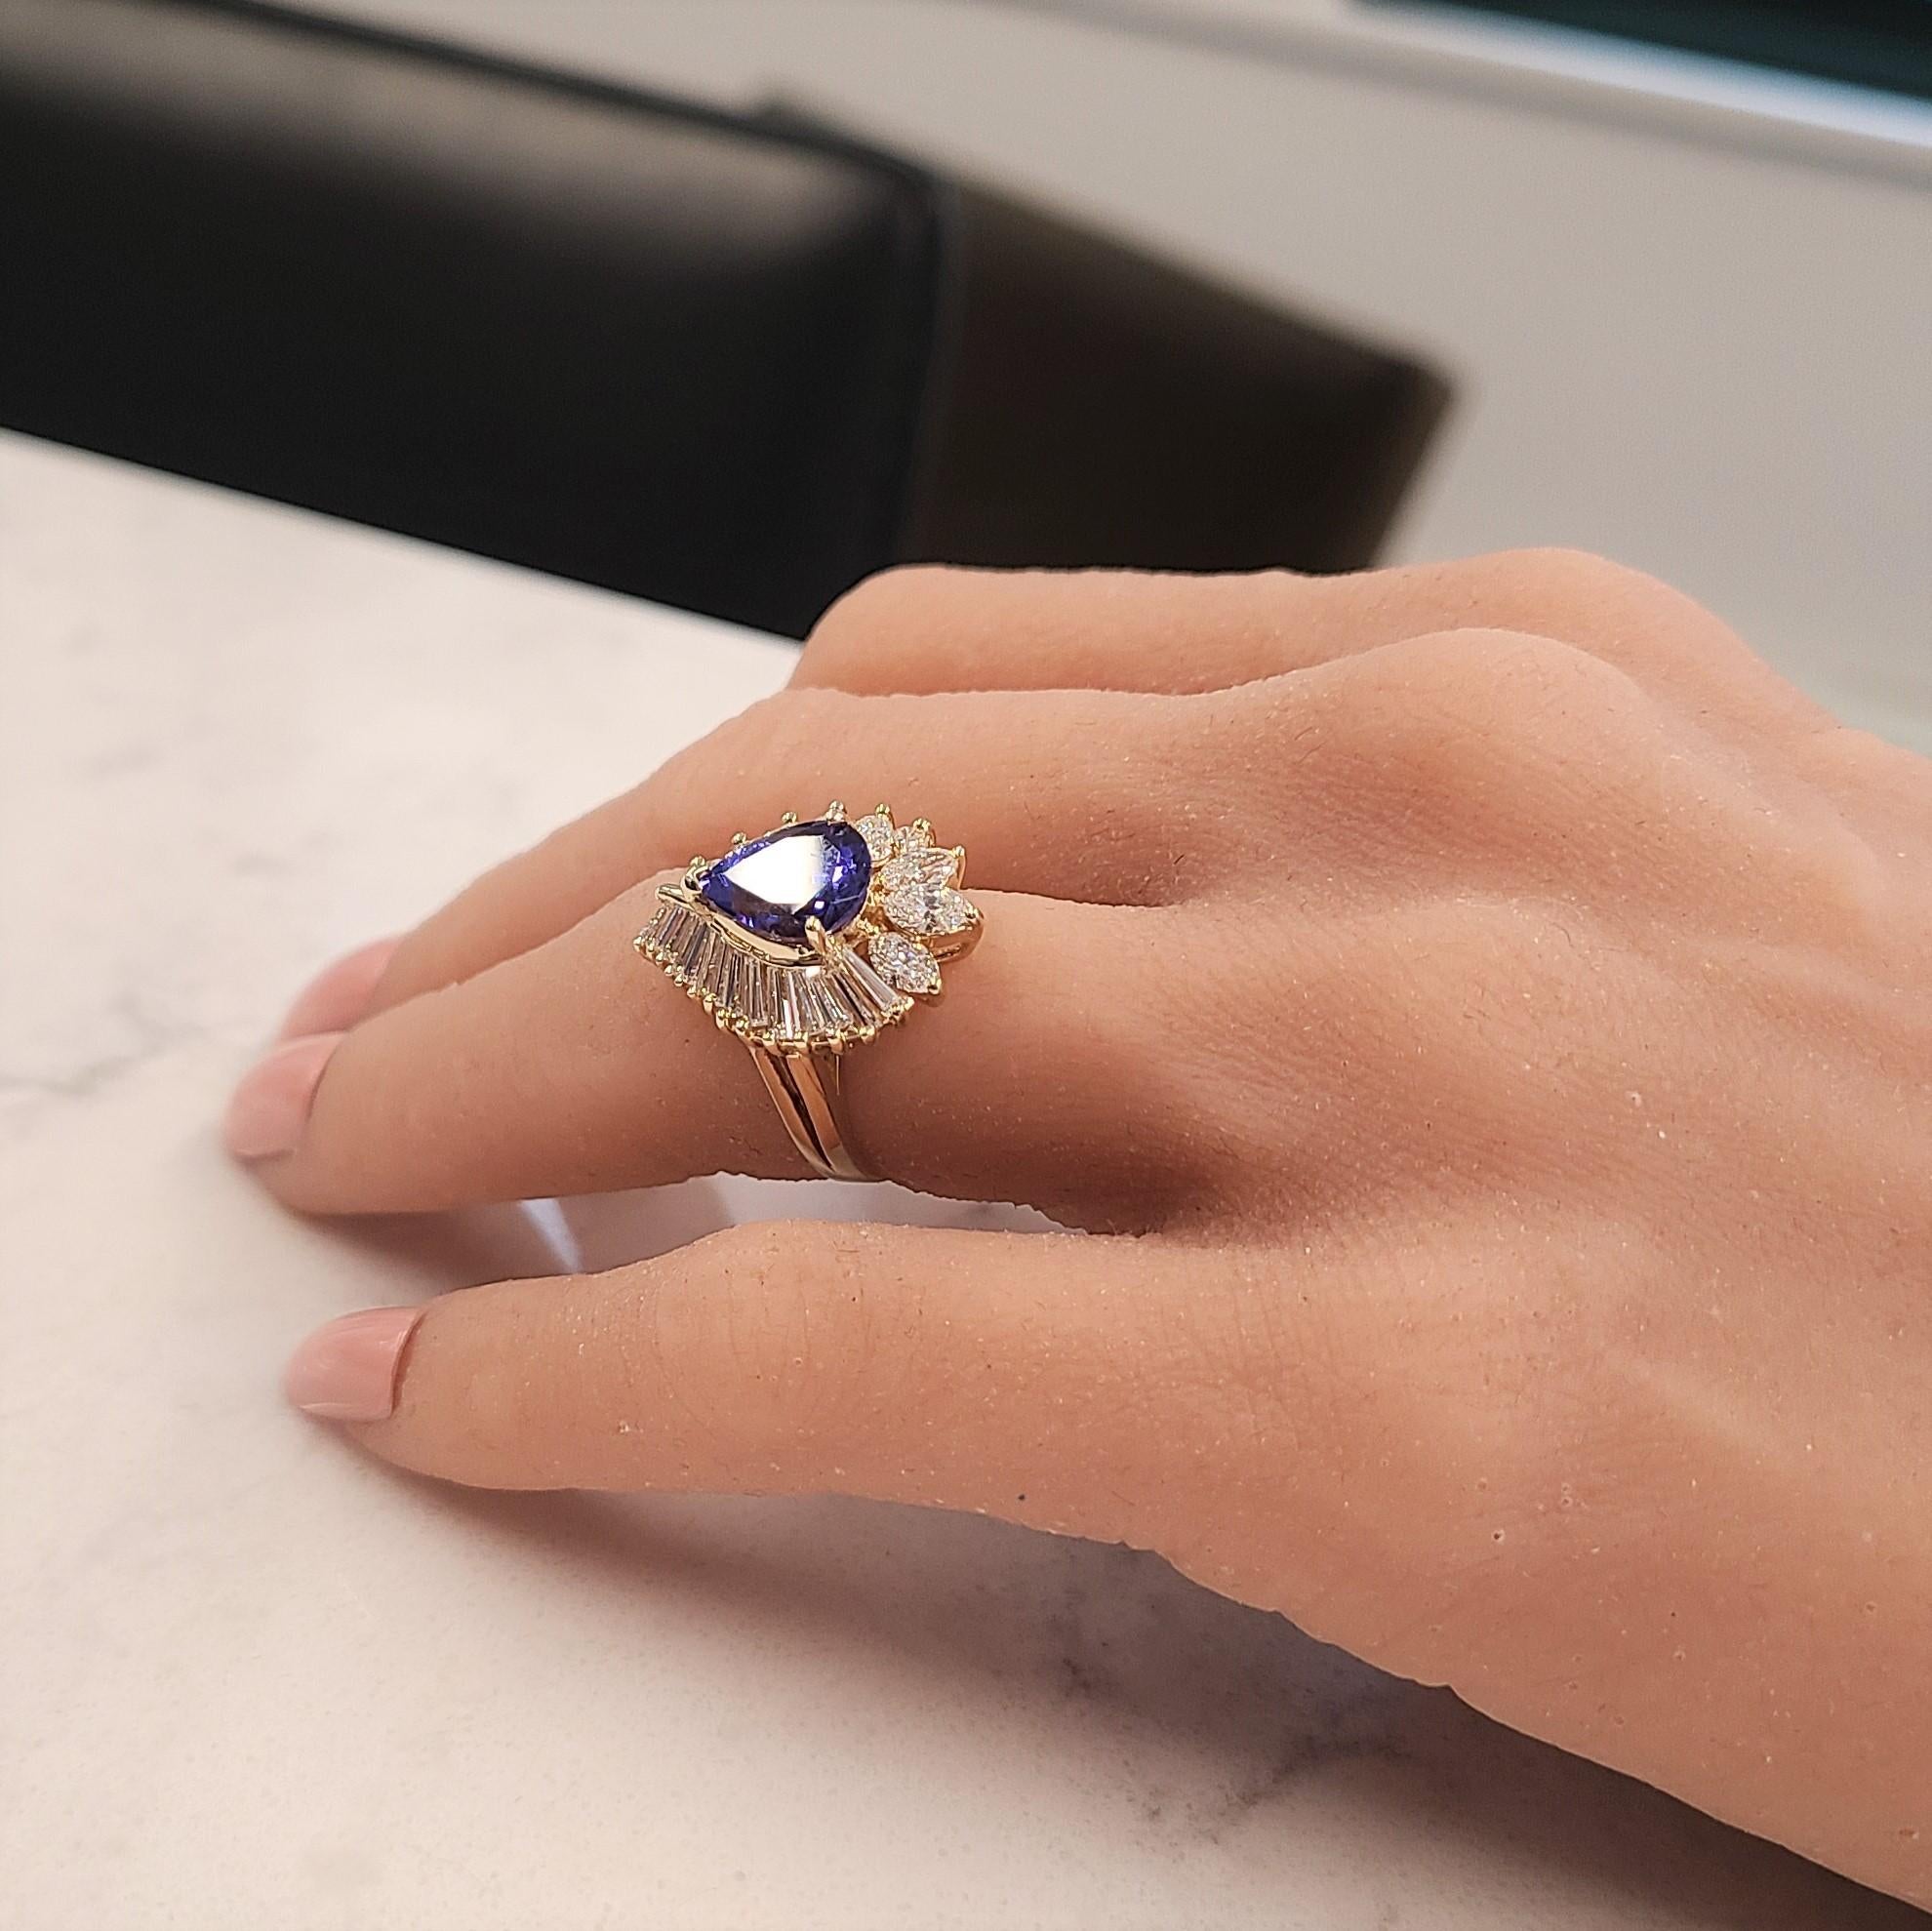 Der Tansanit ist ein so einzigartiger Edelstein, der für seine auffällige Farbe und sein Prestige bekannt ist. Diese hell poliert 14k Gelbgold Cocktail Jahrestag Ring verfügt über birnenförmige Tansanit, dass eine atemberaubende bläulich-violett und